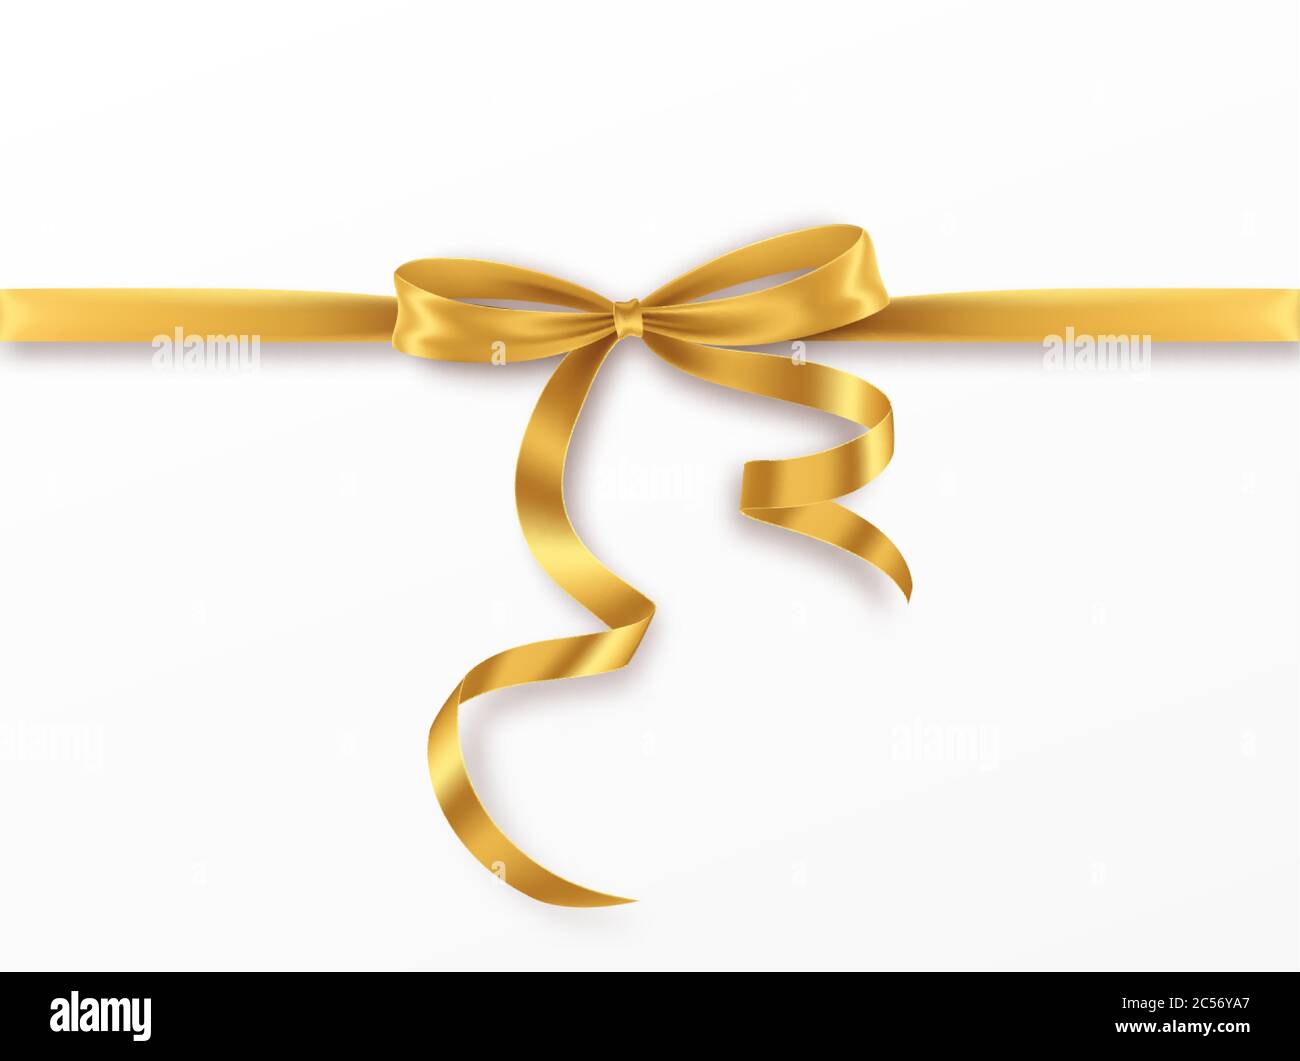 Goldene Schleife und Band auf weißem Hintergrund. Realistische Goldschleife für Dekorationsdesign Feiertagsrahmen, Bordüre. Vektorgrafik Stock Vektor